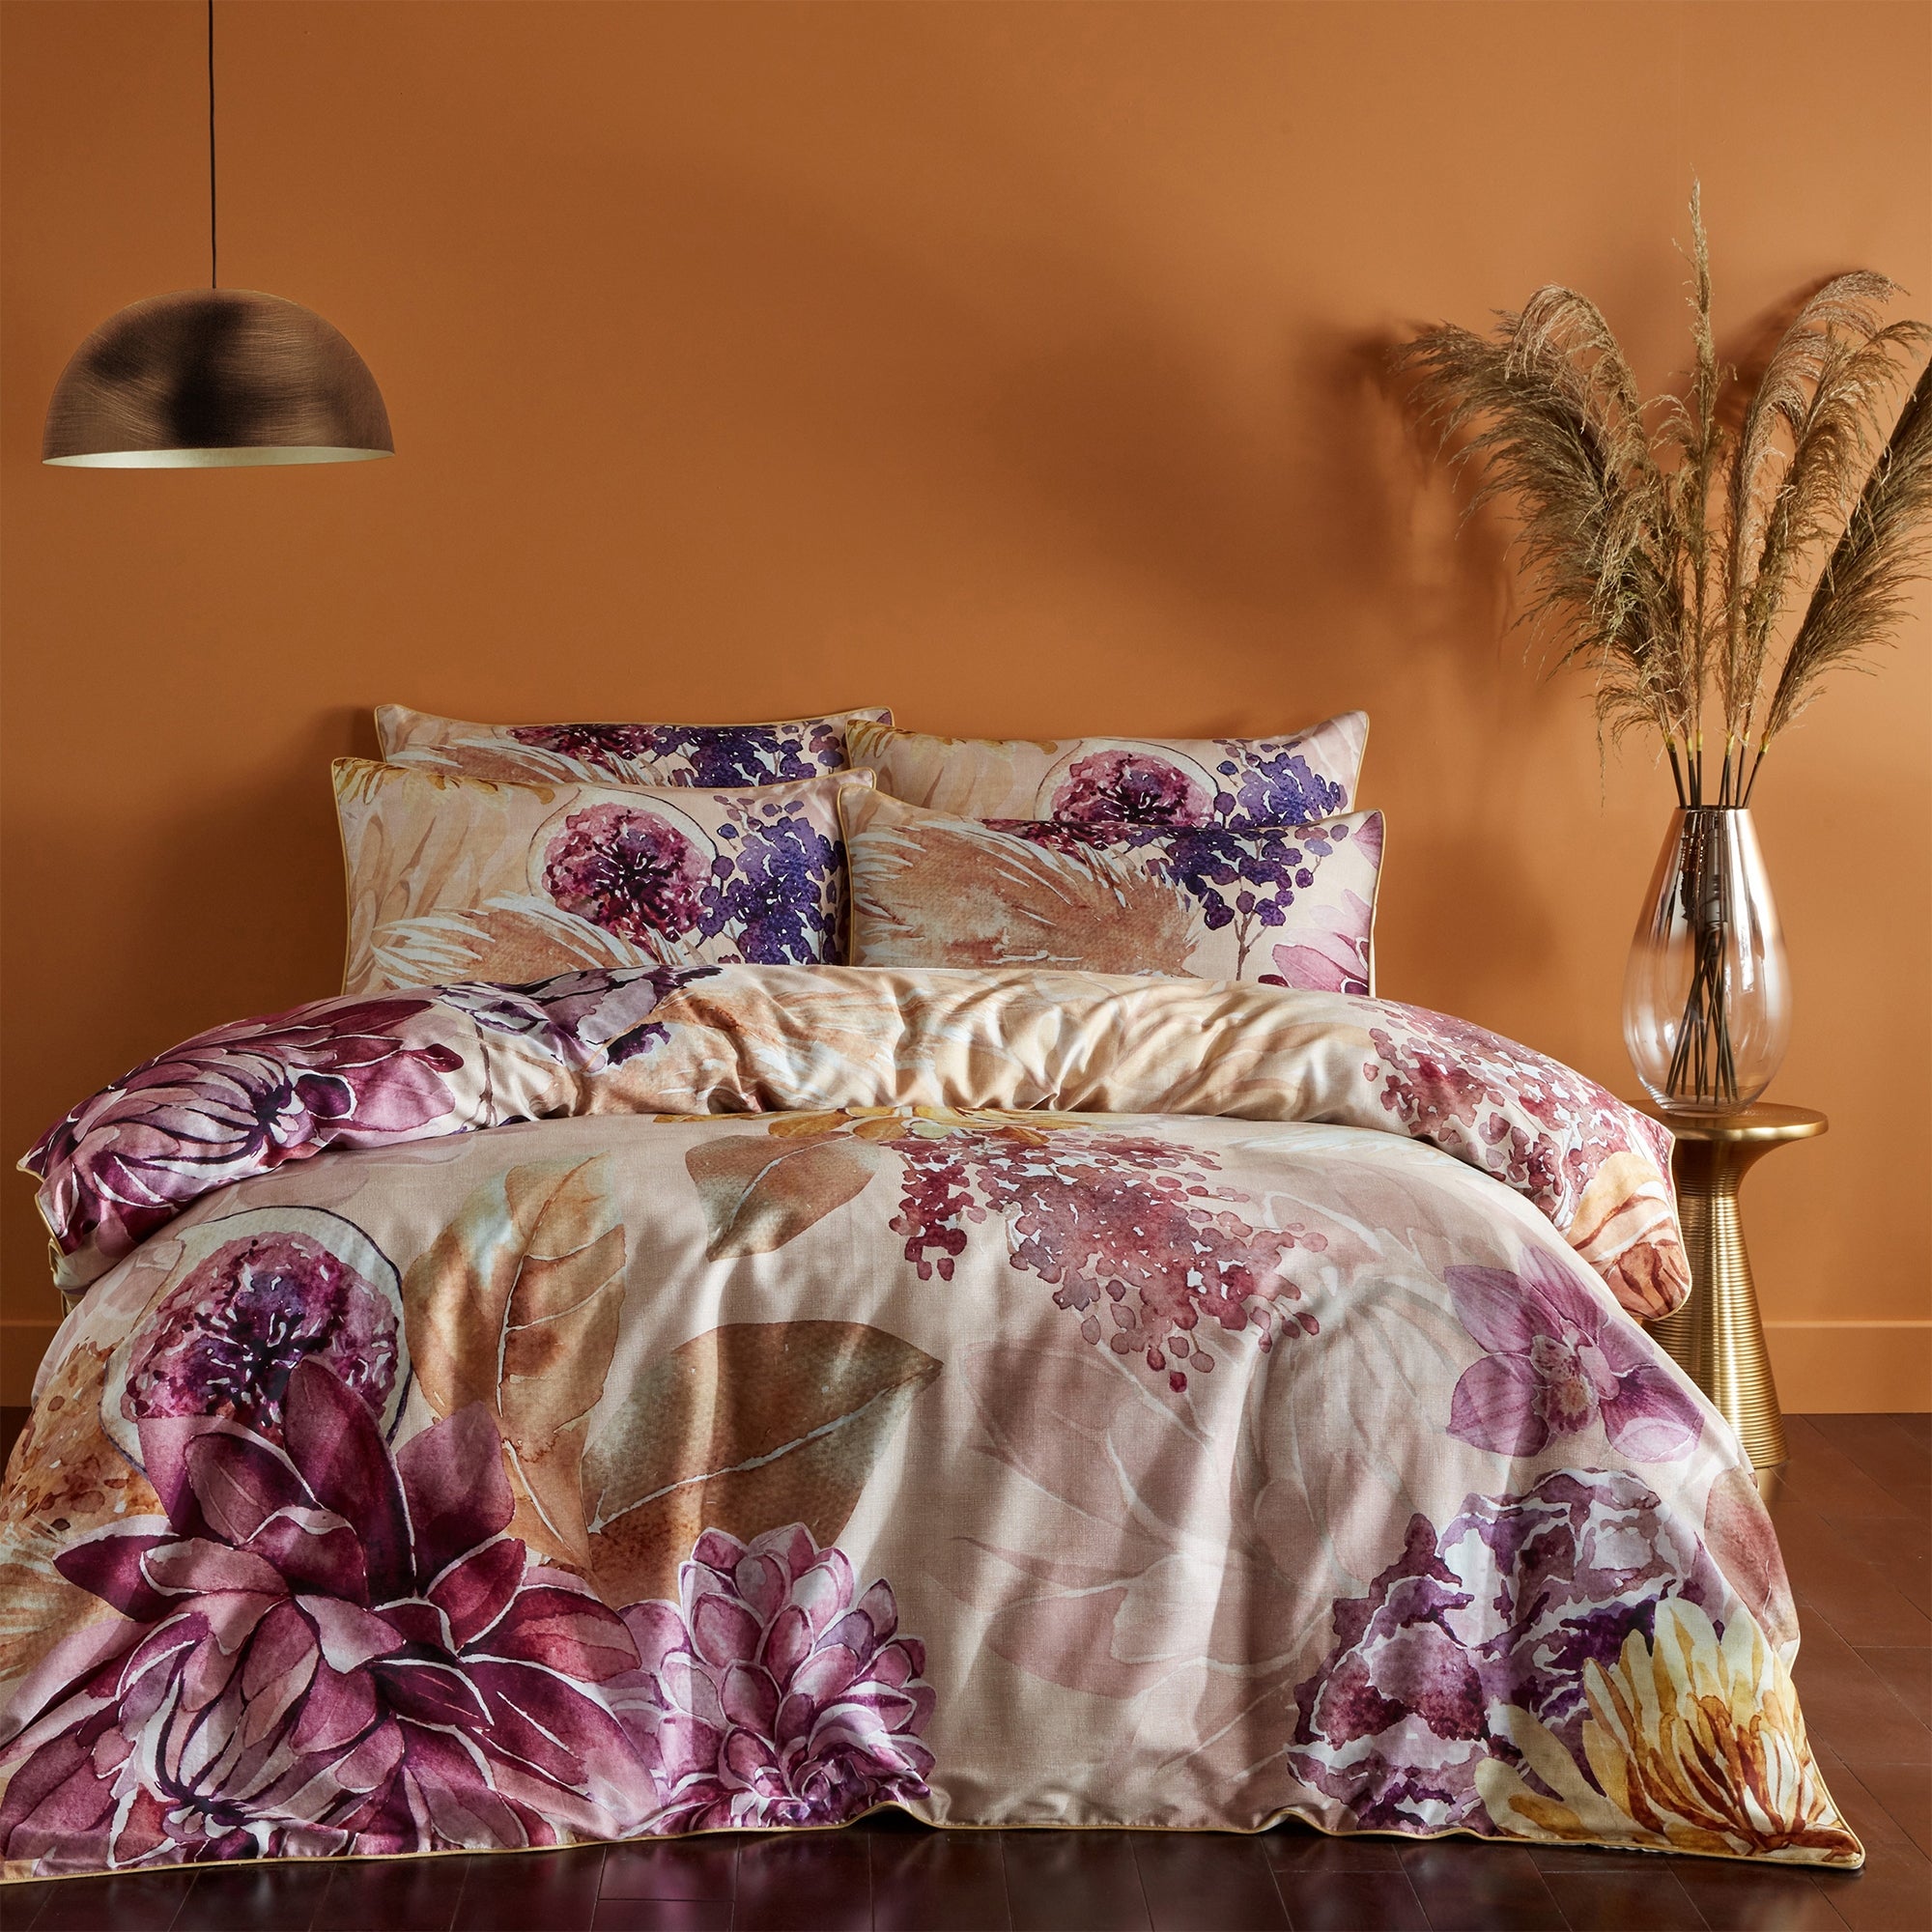 Paoletti Saffa 100% Cotton Duvet Cover and Pillowcase Set Purple/Beige